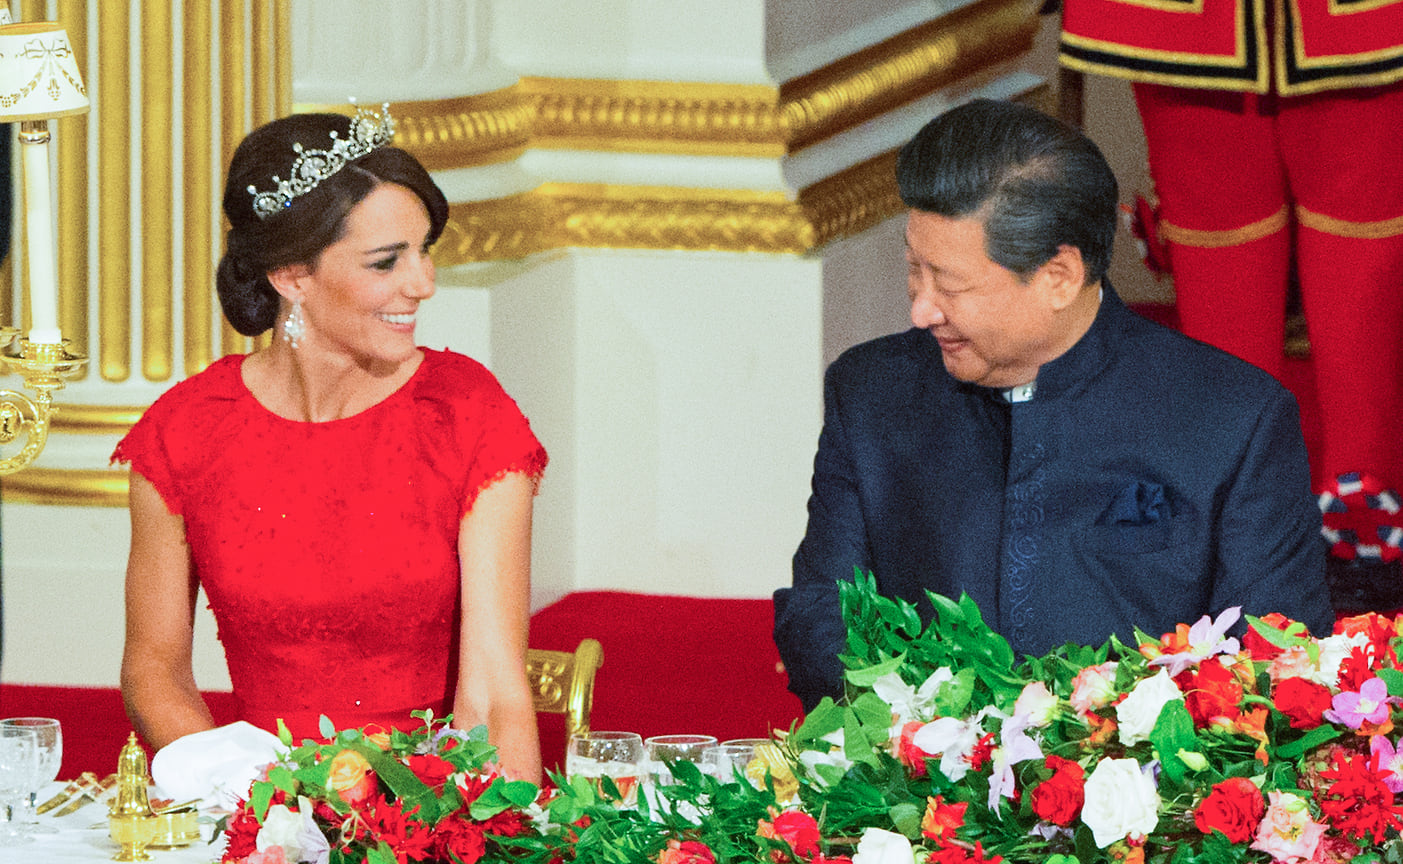 Герцогиня Кембриджская в тиаре Lotus Flower на банкете в честь президента Китая Си Цзиньпина, 2015 год